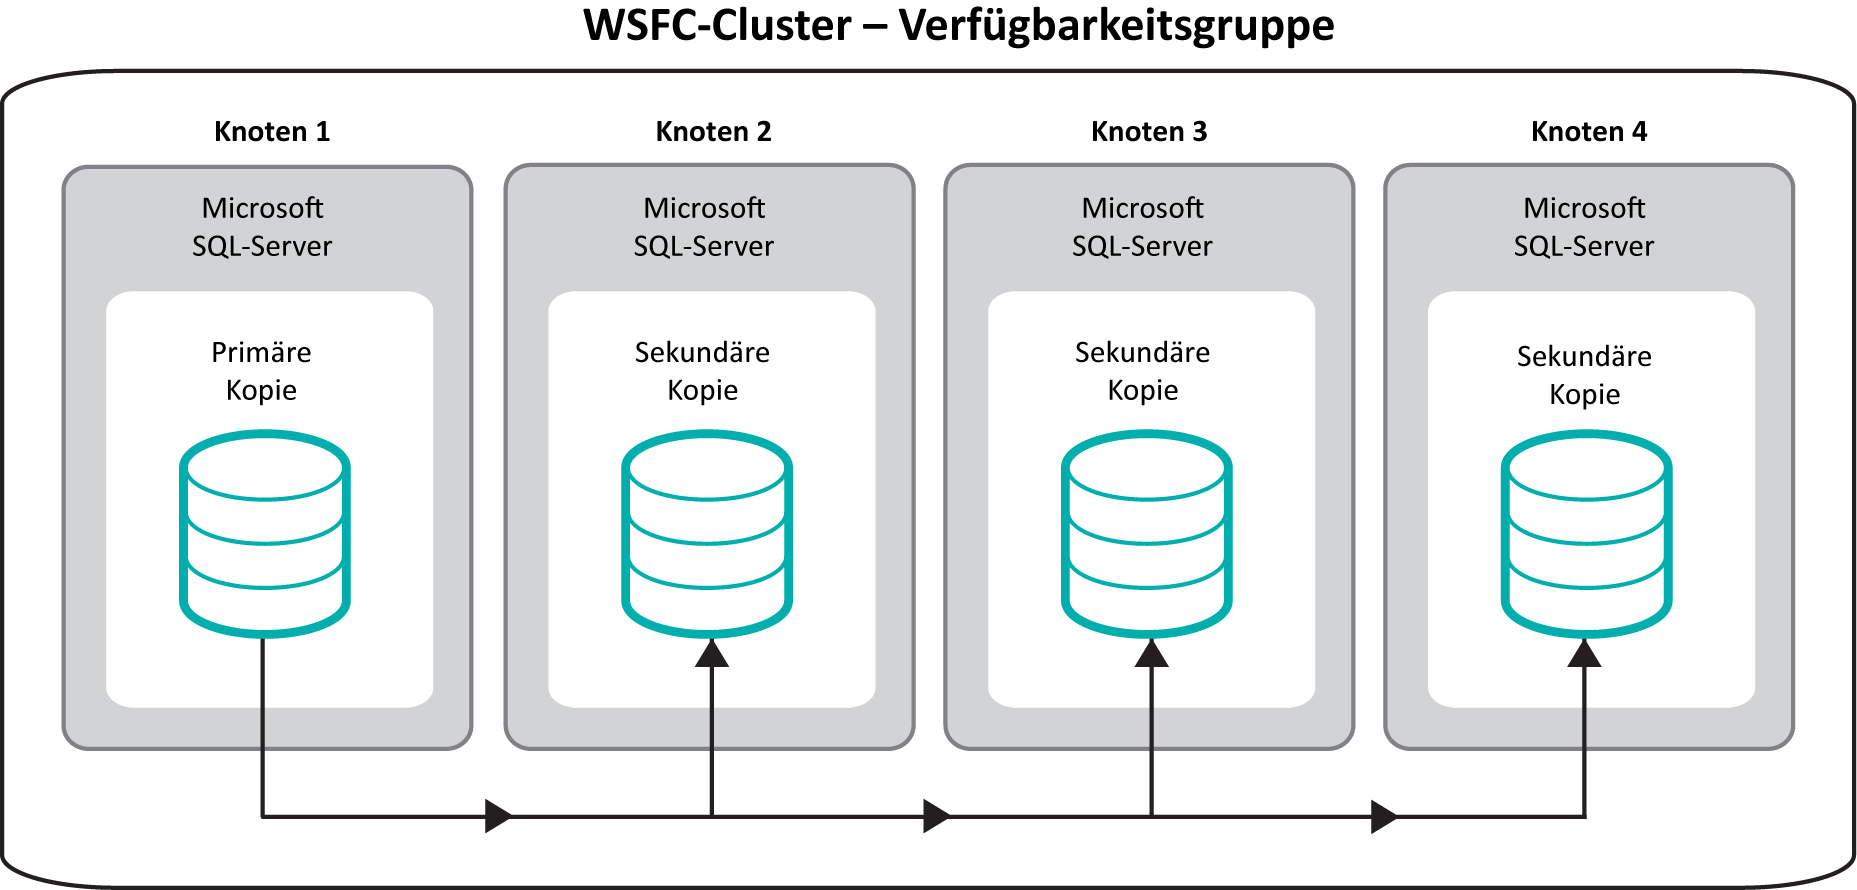 Installation Um eine Verfügbarkeitsgruppe zu verwenden, müssen Sie einen WSFC-Cluster mit mehreren Knoten konfigurieren.